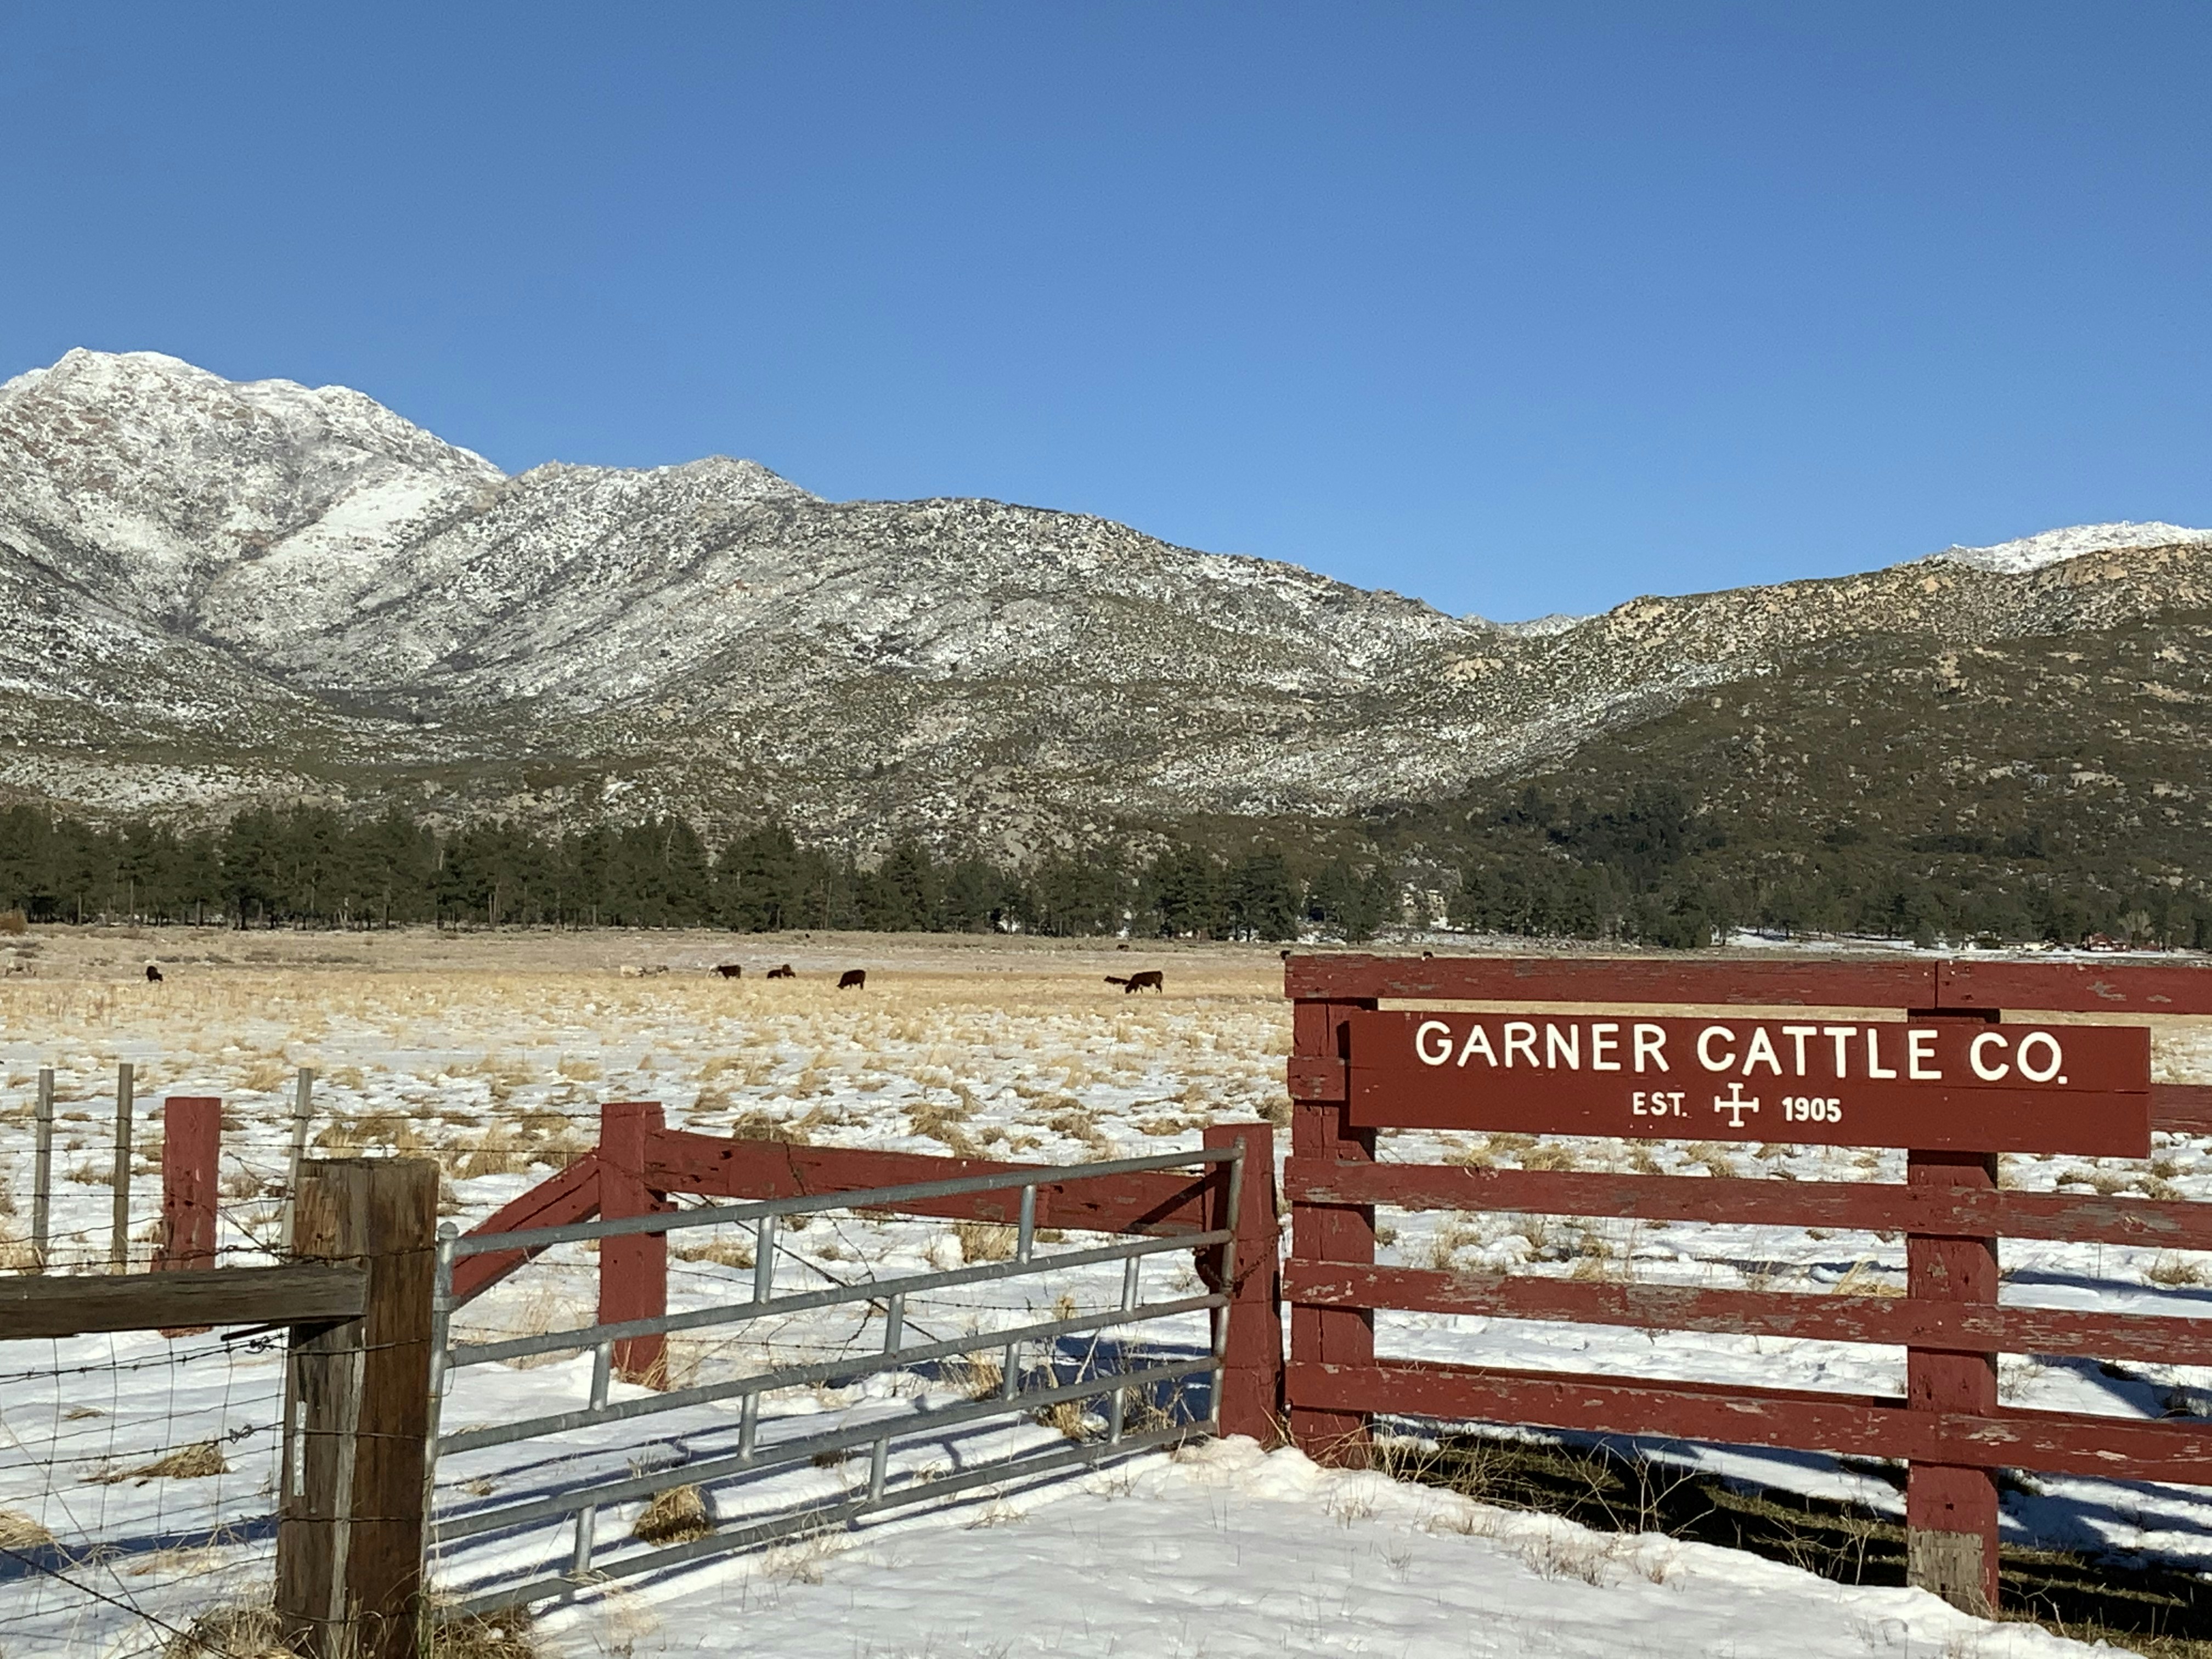 Cattle ranch near Lake Hemet, CA.